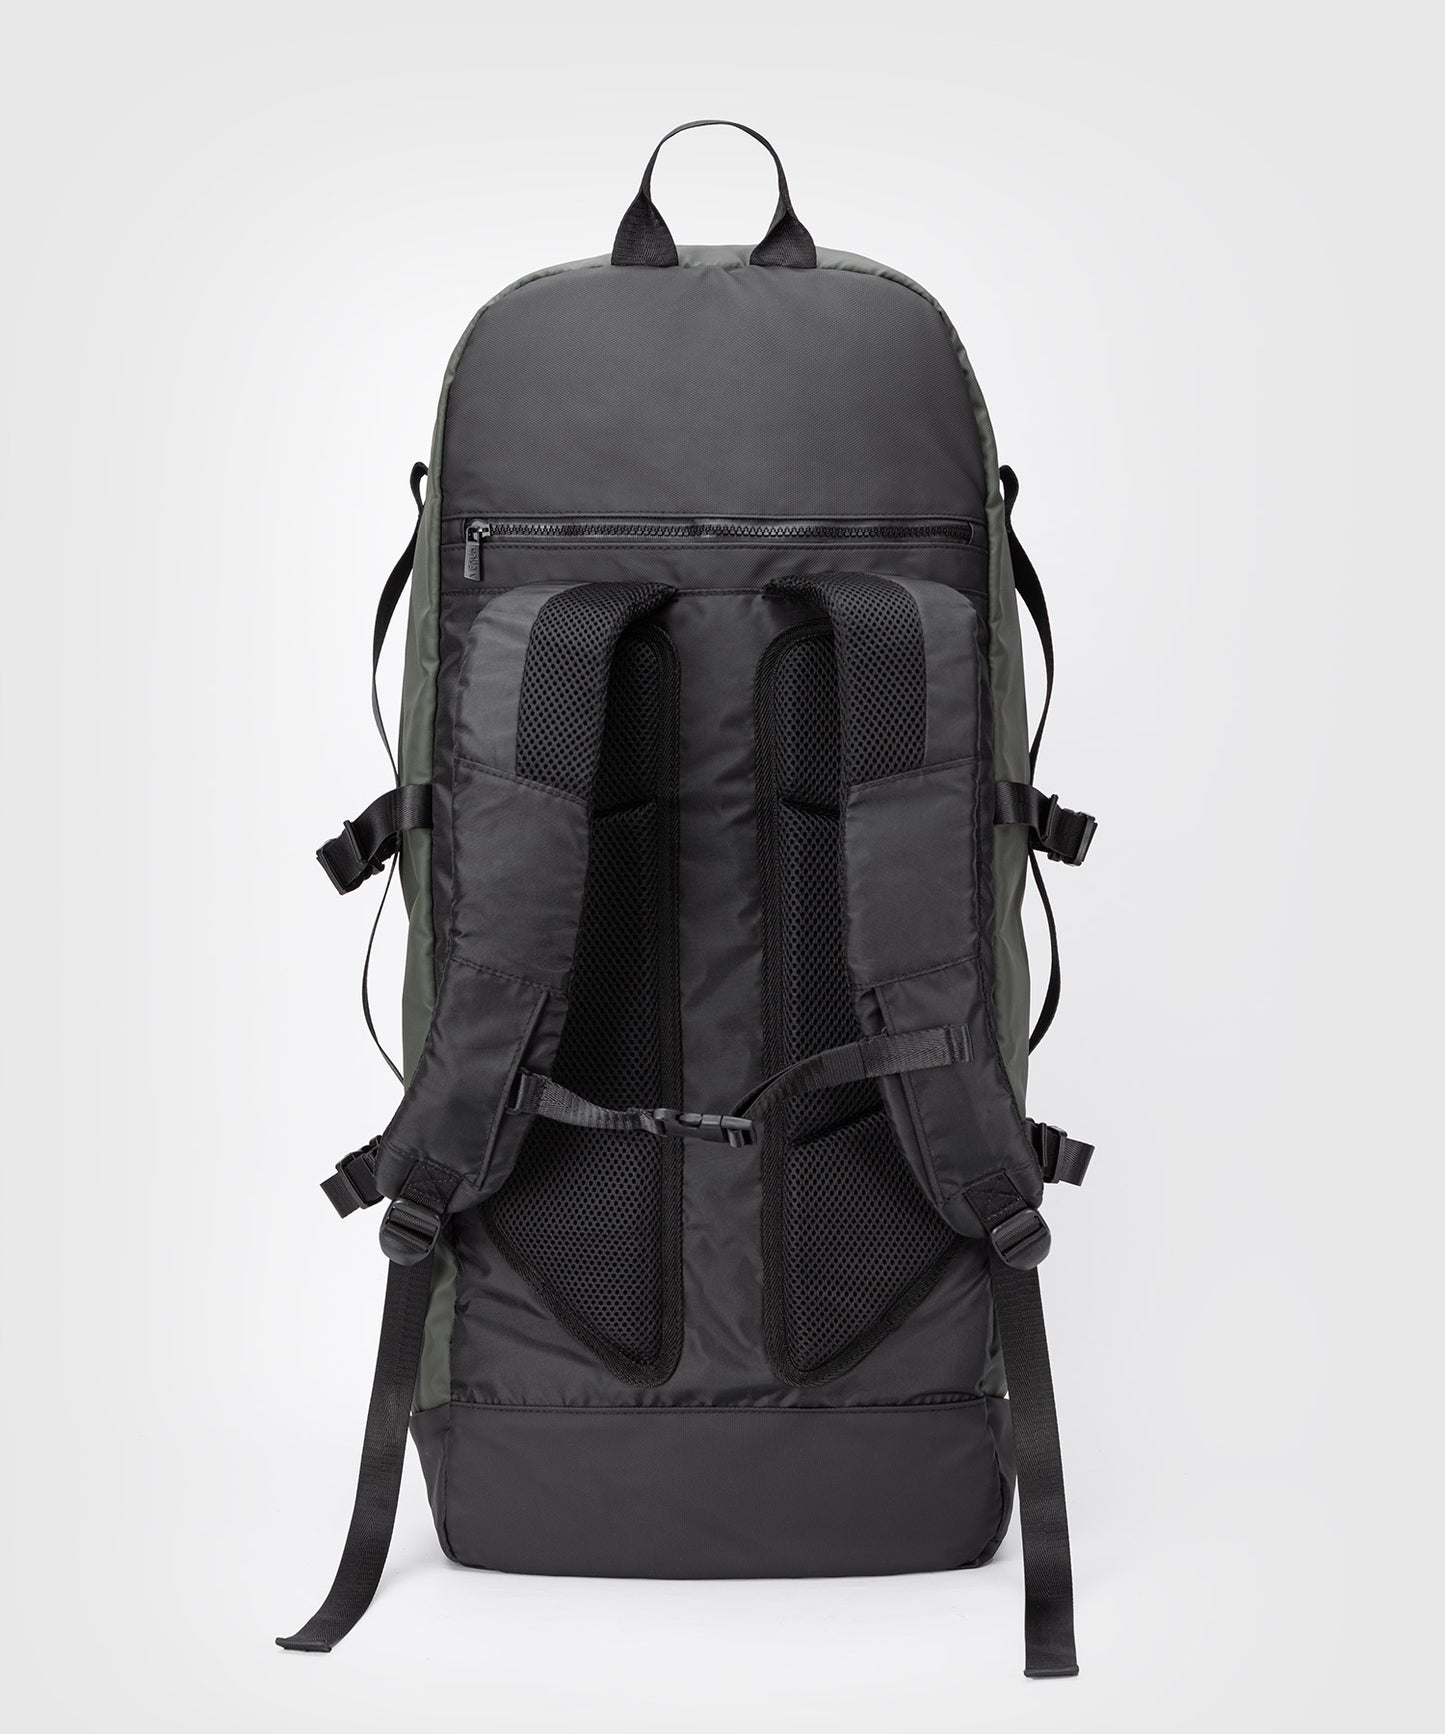 Venum Evo 2 Xtrem Backpack - Black/Khaki